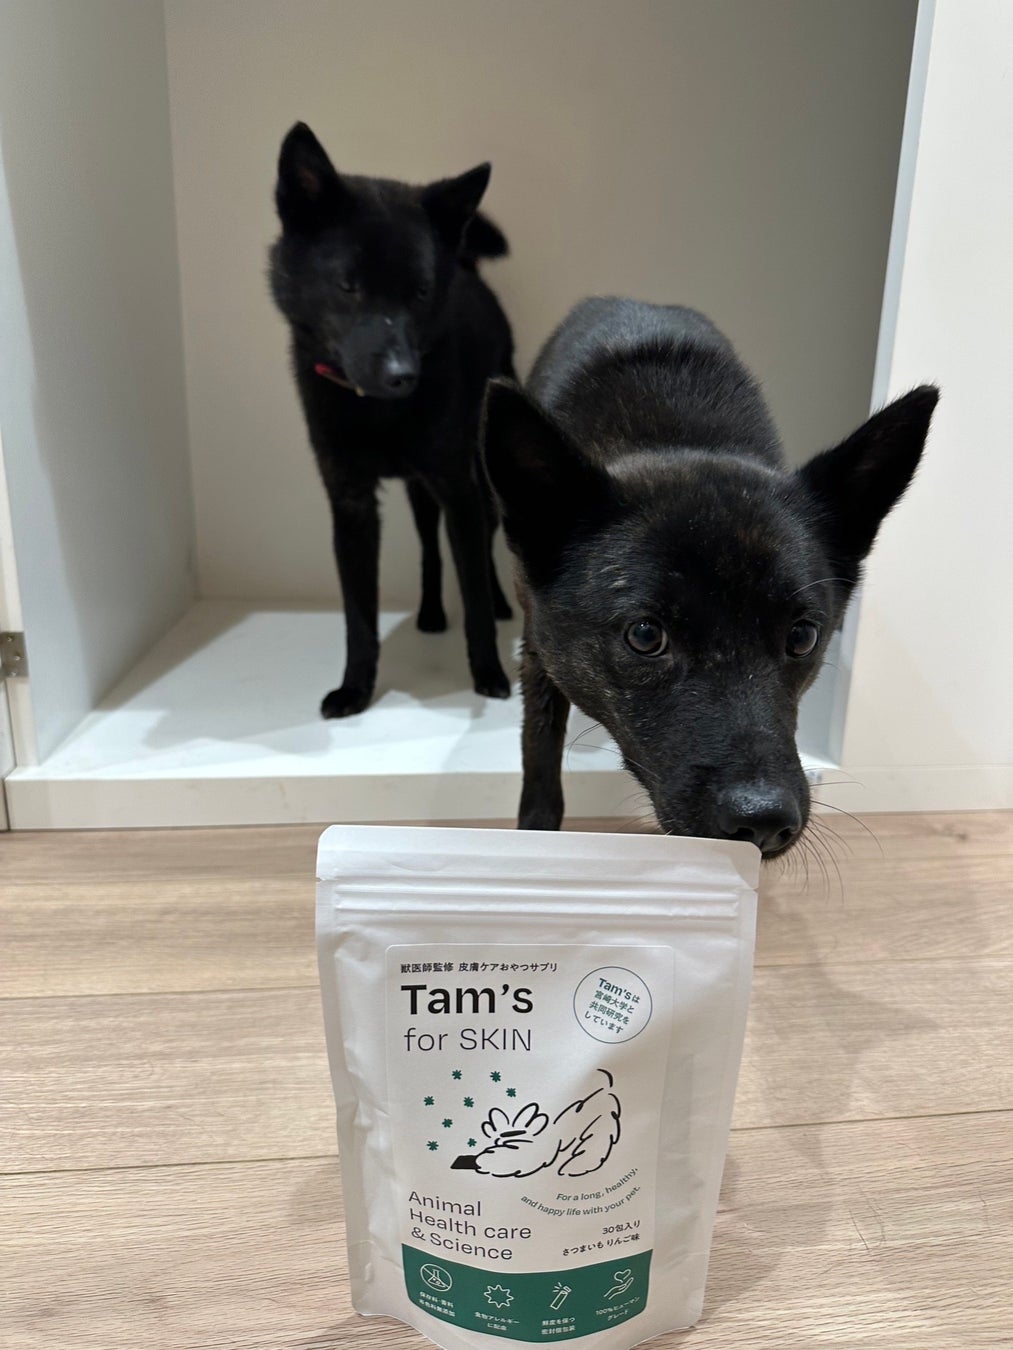 HOGOKEN TOKYOの保護犬へTam’s for SKINを無償提供開始